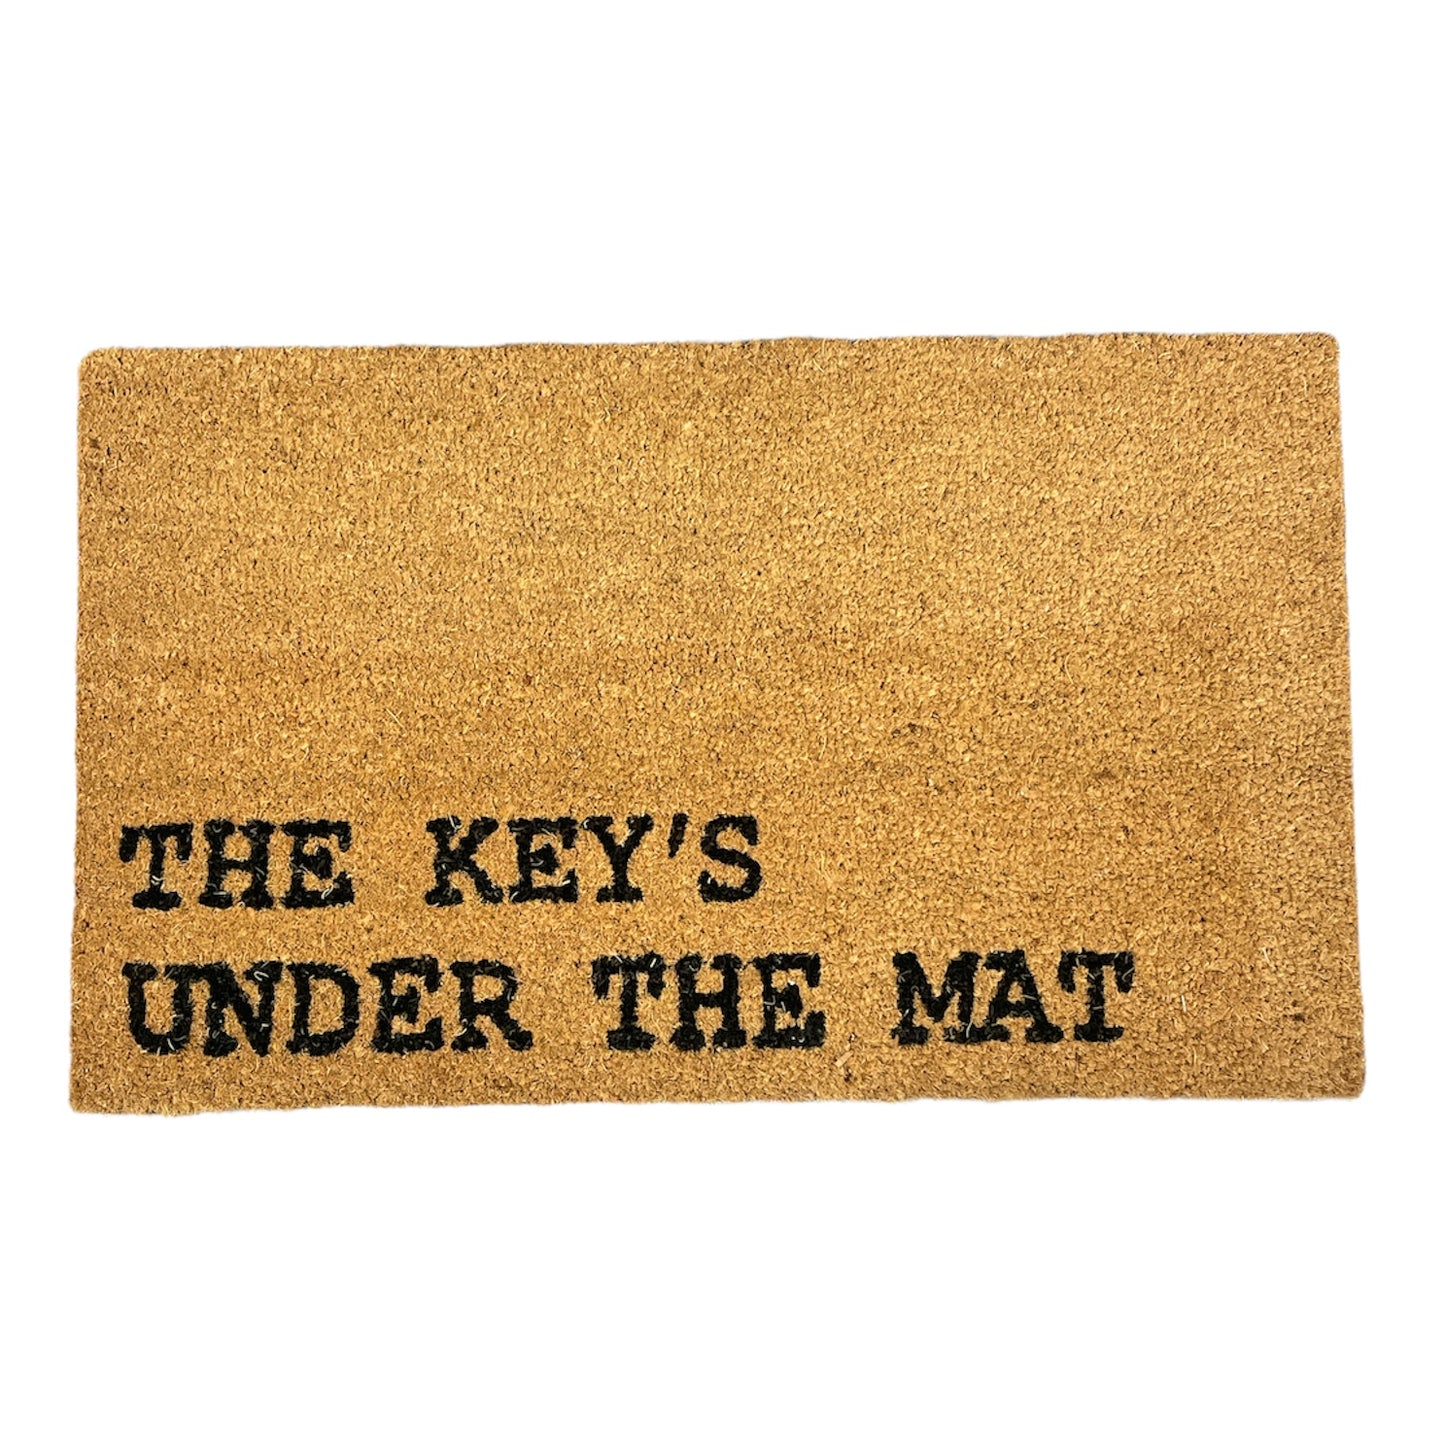 The Key Is Under The Mat Doormat